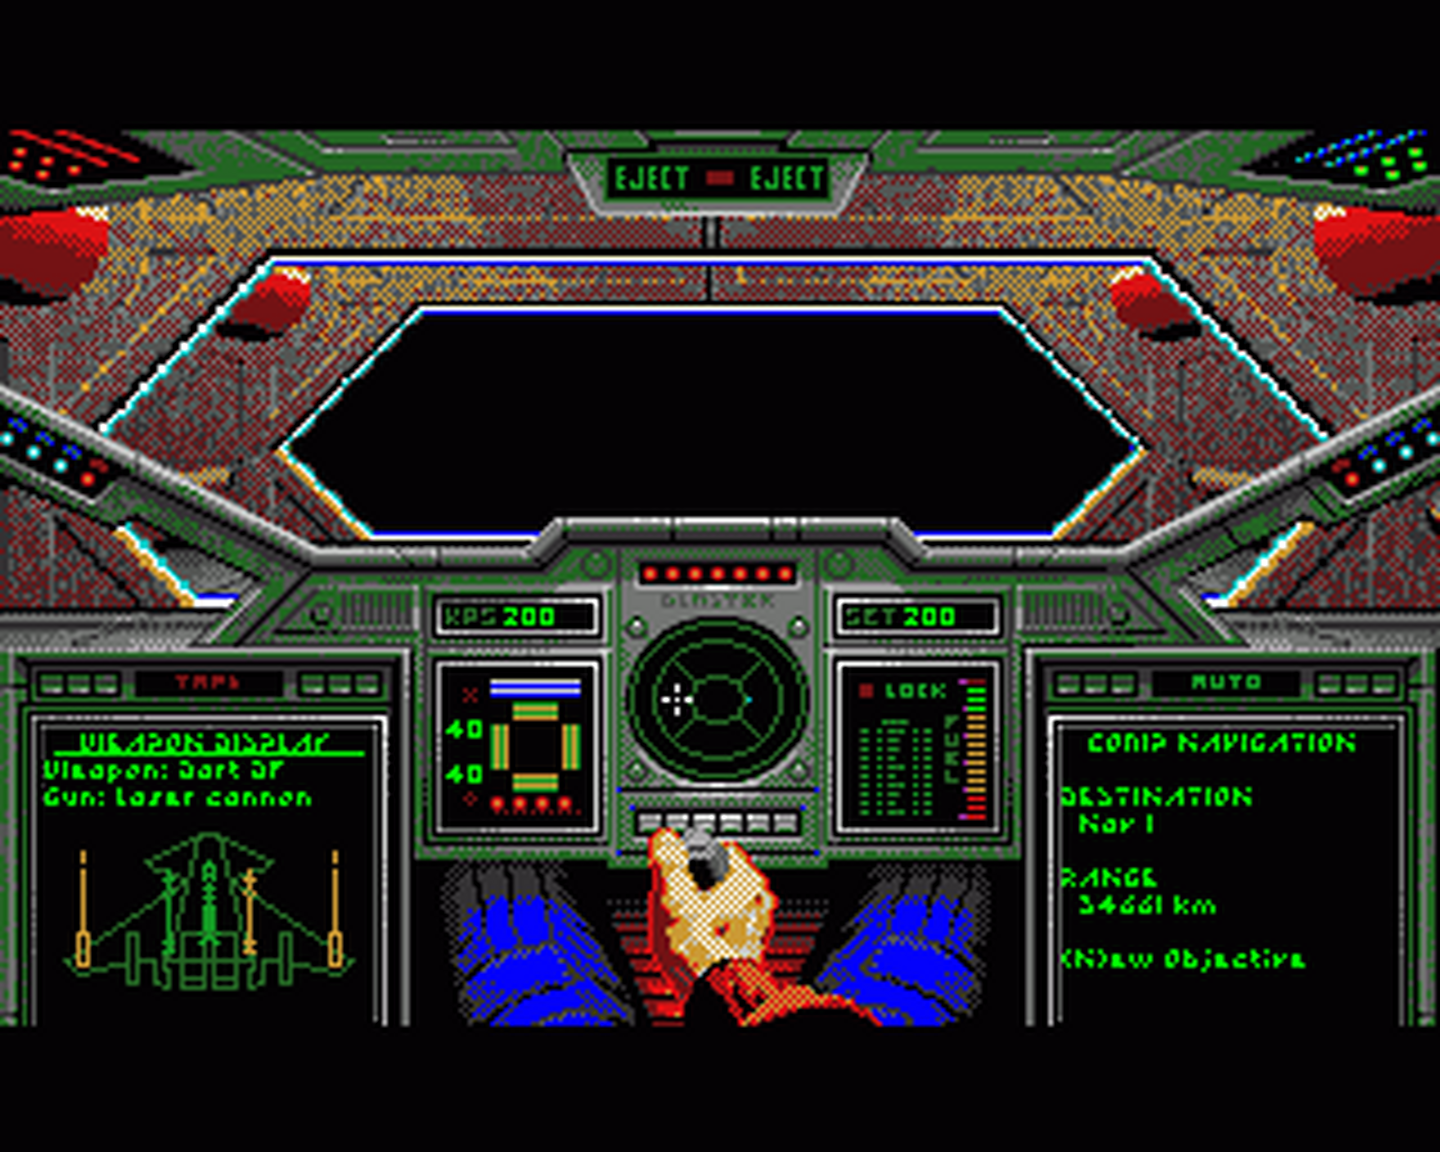 Amiga GameBase Wing_Commander Origin 1992